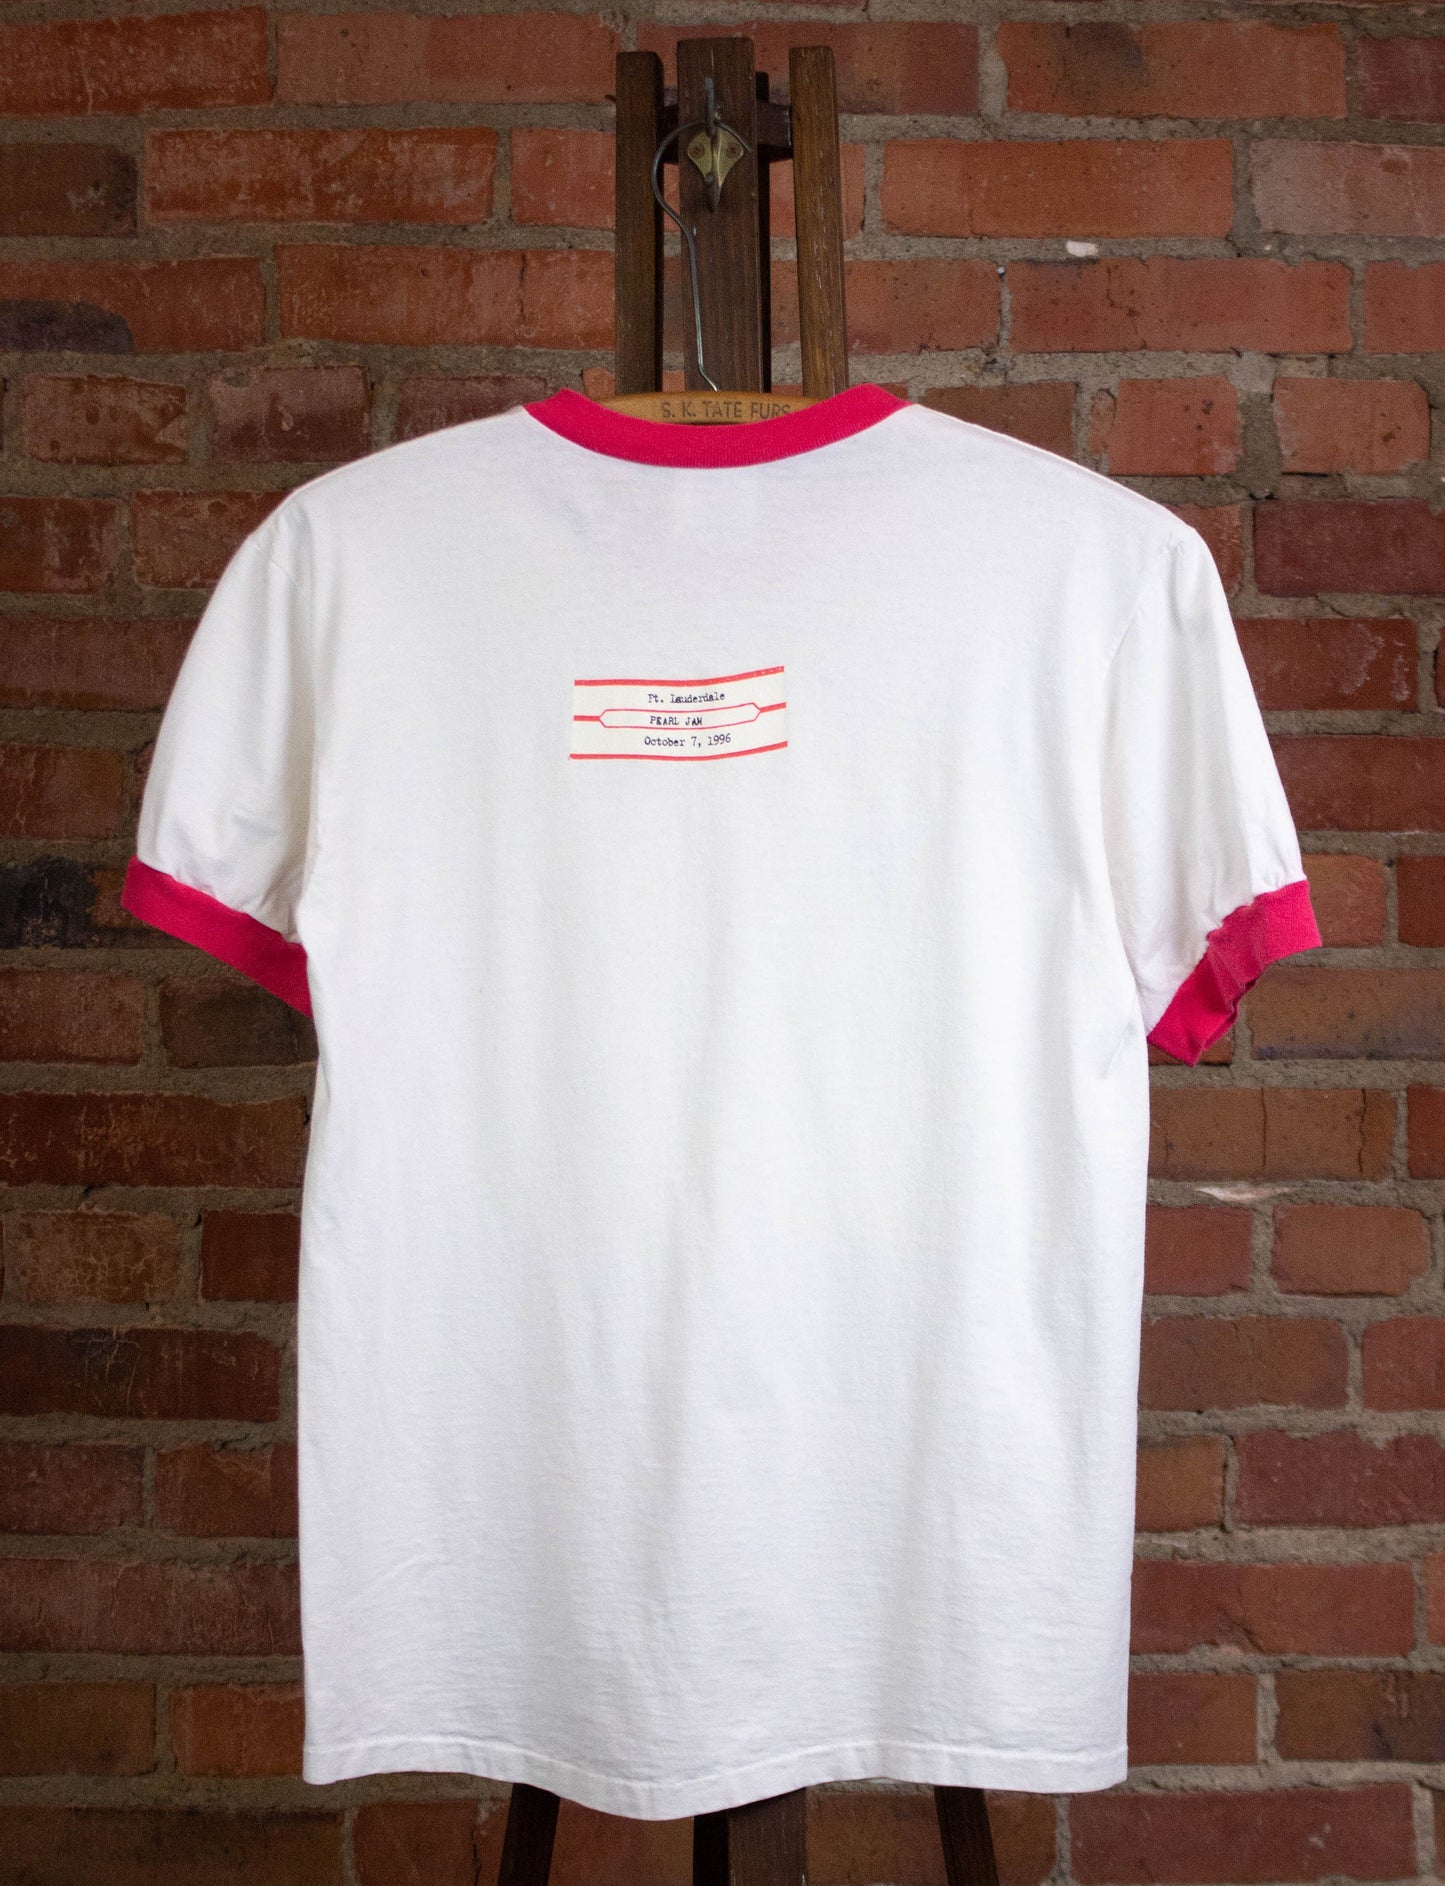 Vintage Pearl Jam 1996 Ft. Lauderdale Concert Ringer T Shirt White Medium